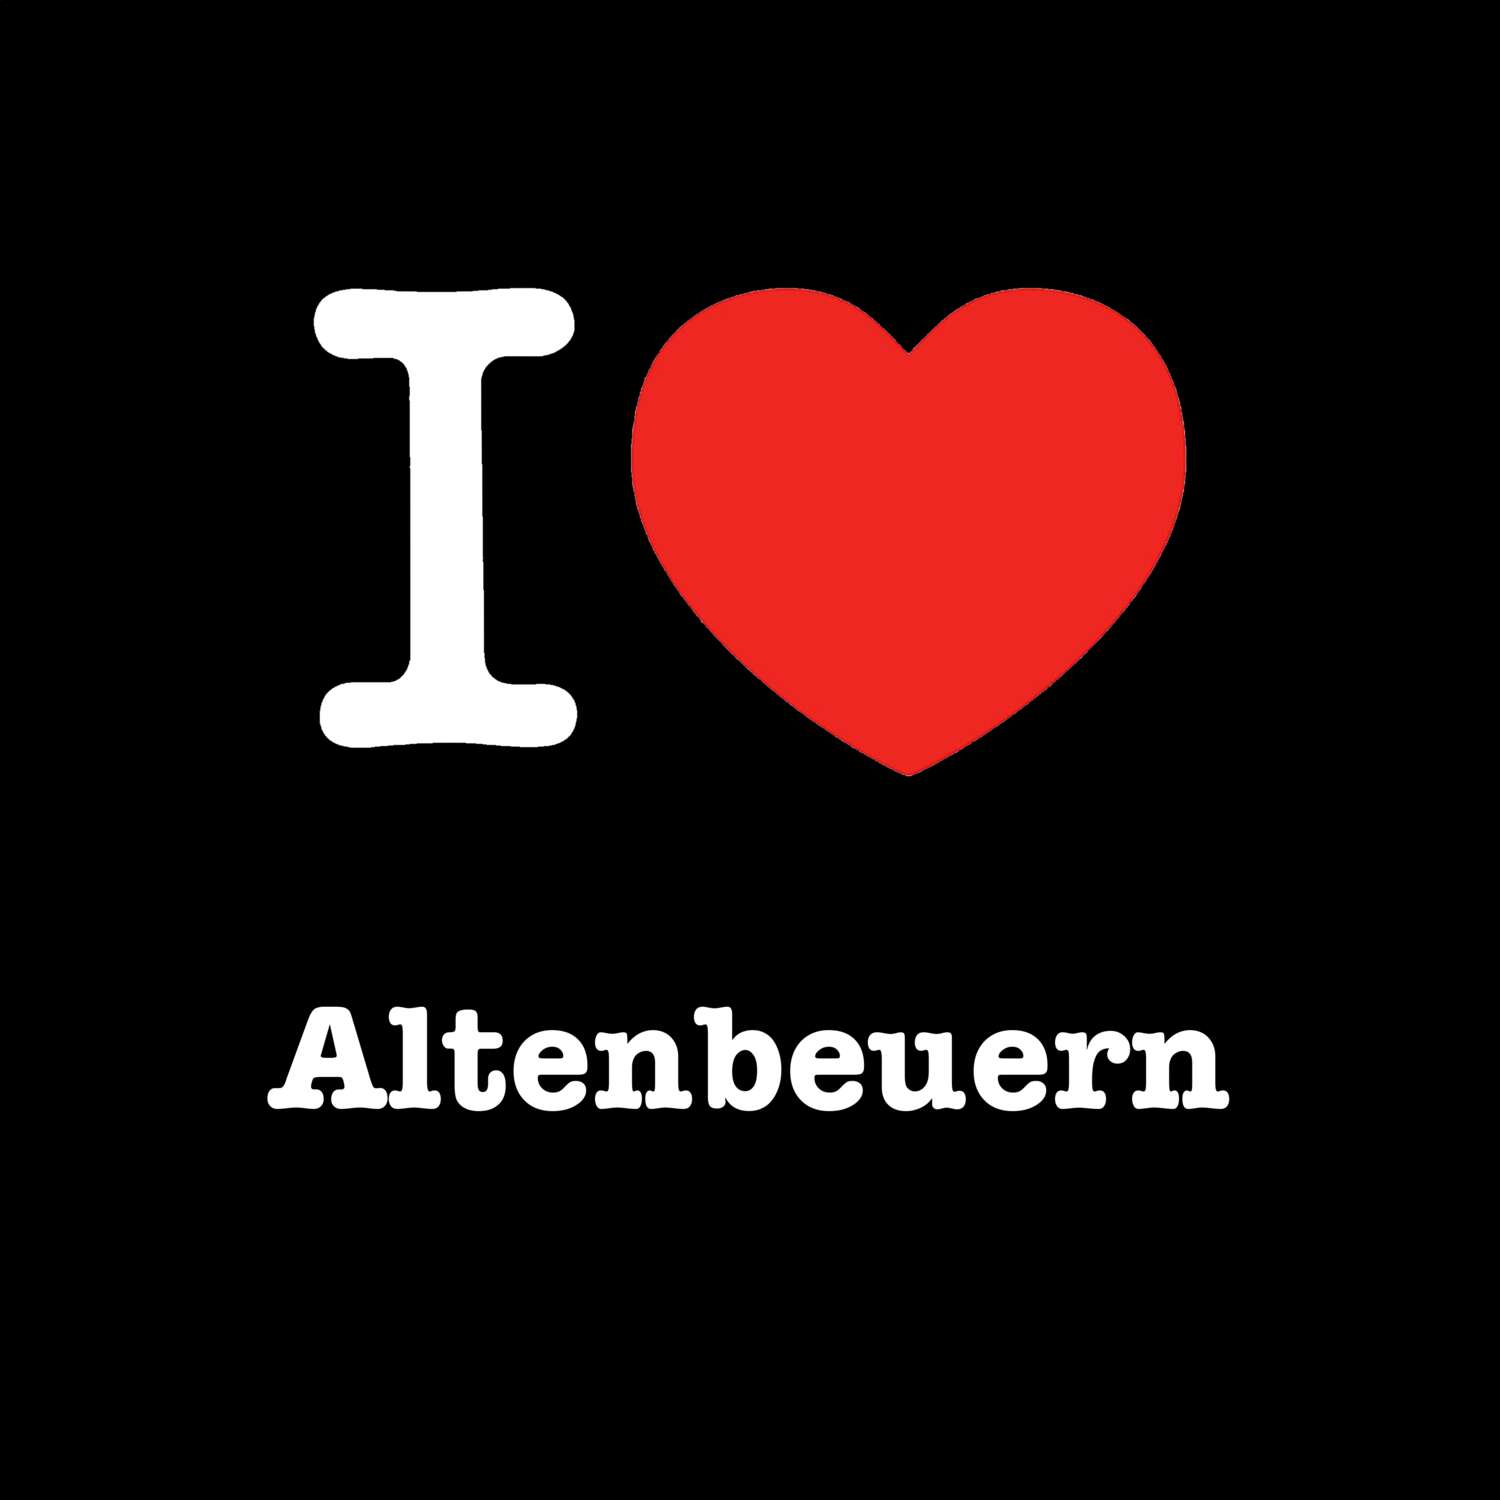 Altenbeuern T-Shirt »I love«